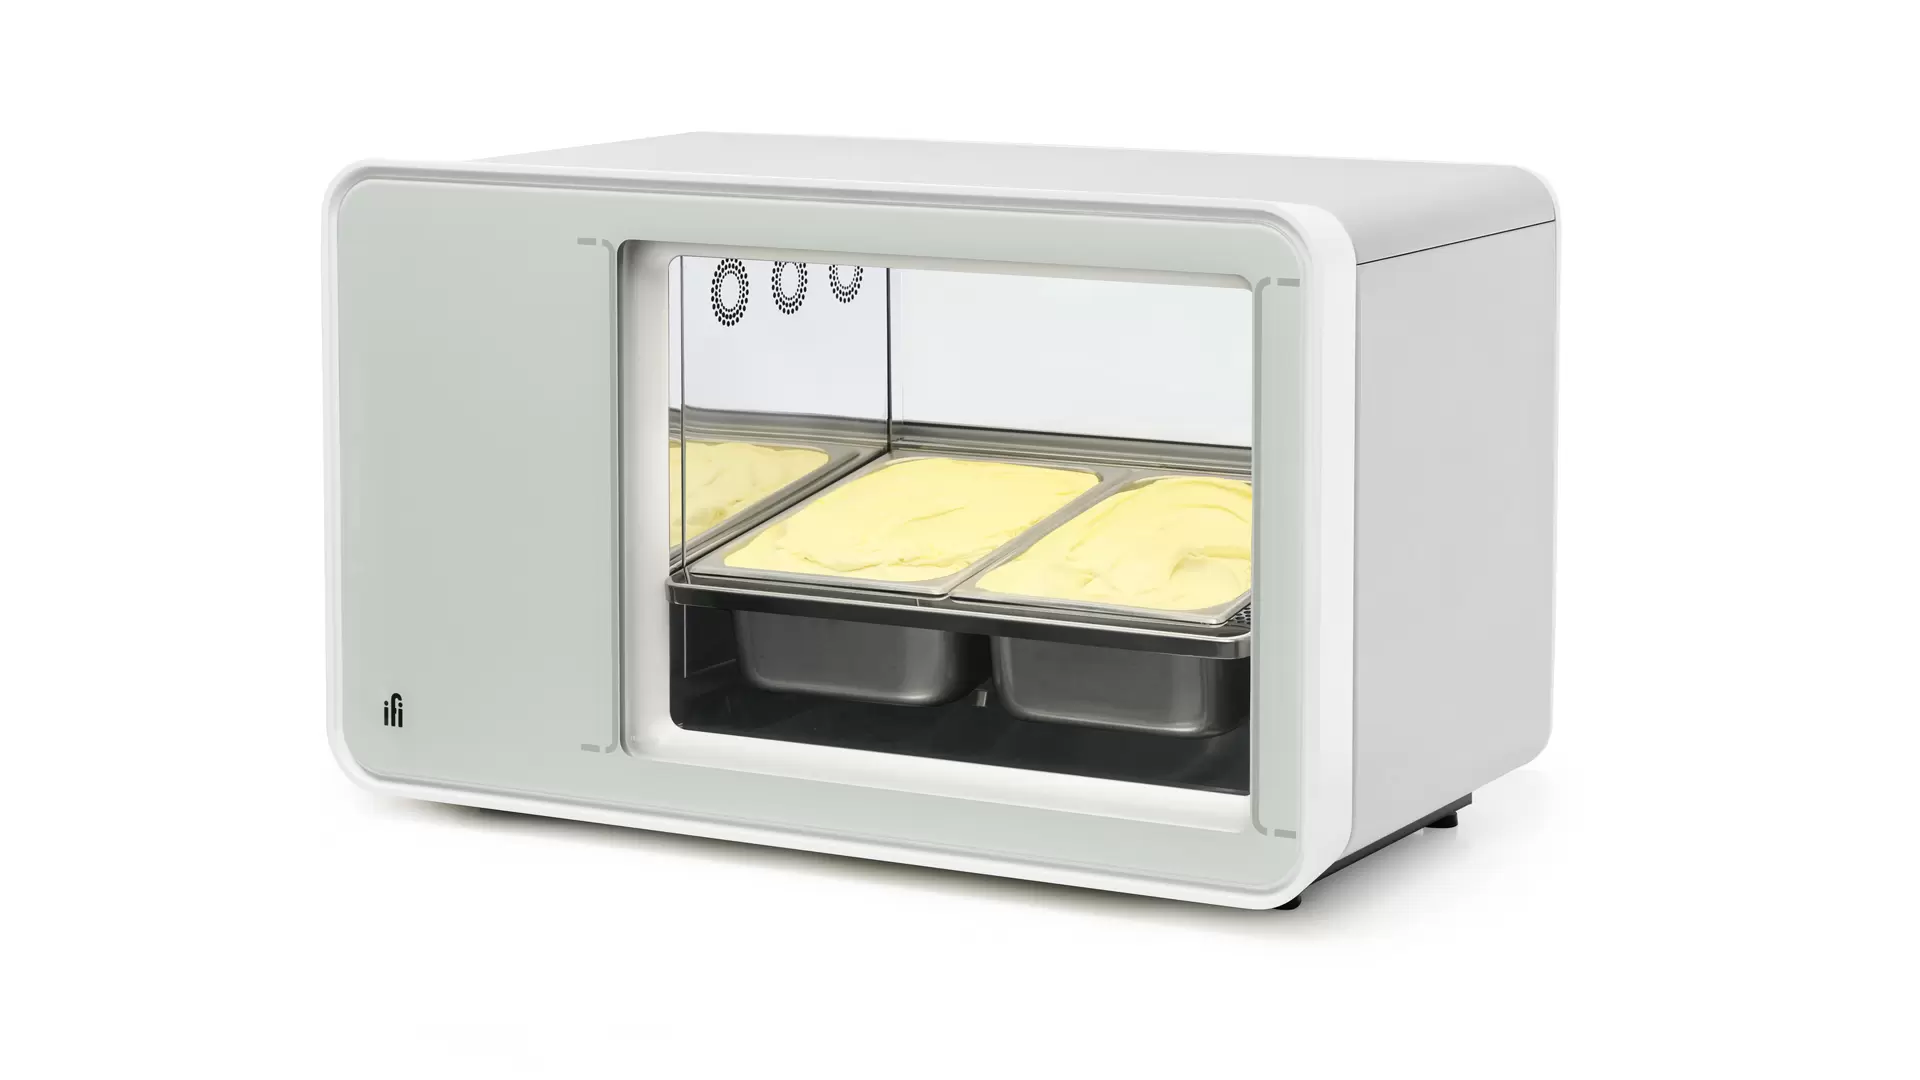 ifi-mini-display-case-artsianal-gelato-pastry-pralines-al-volo